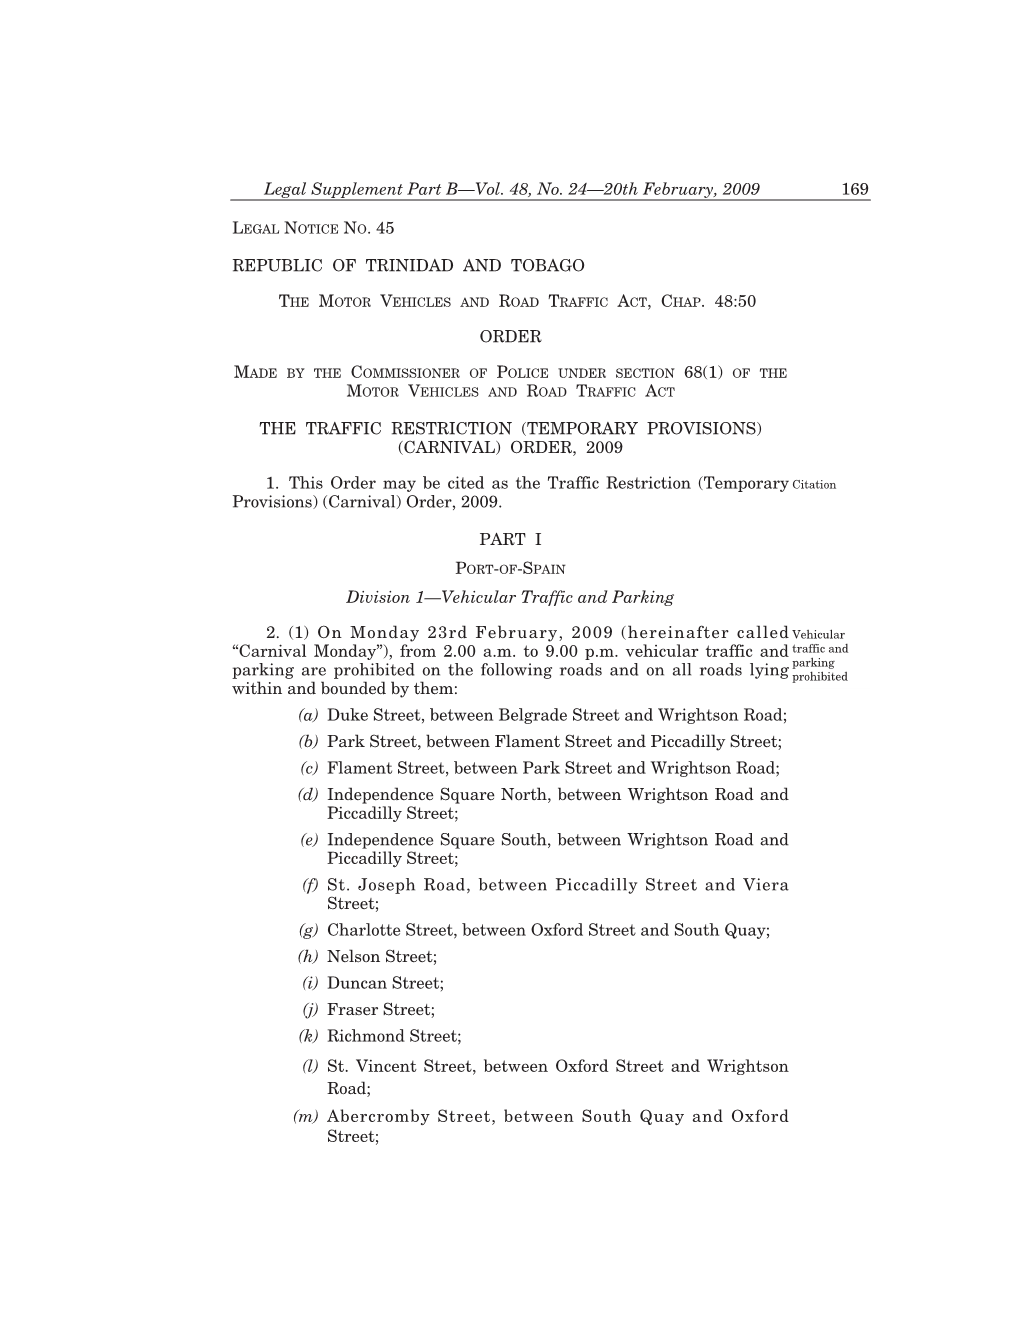 Legal Notice No. 45 Vol. 48 .No, 24—20Th February, 2009